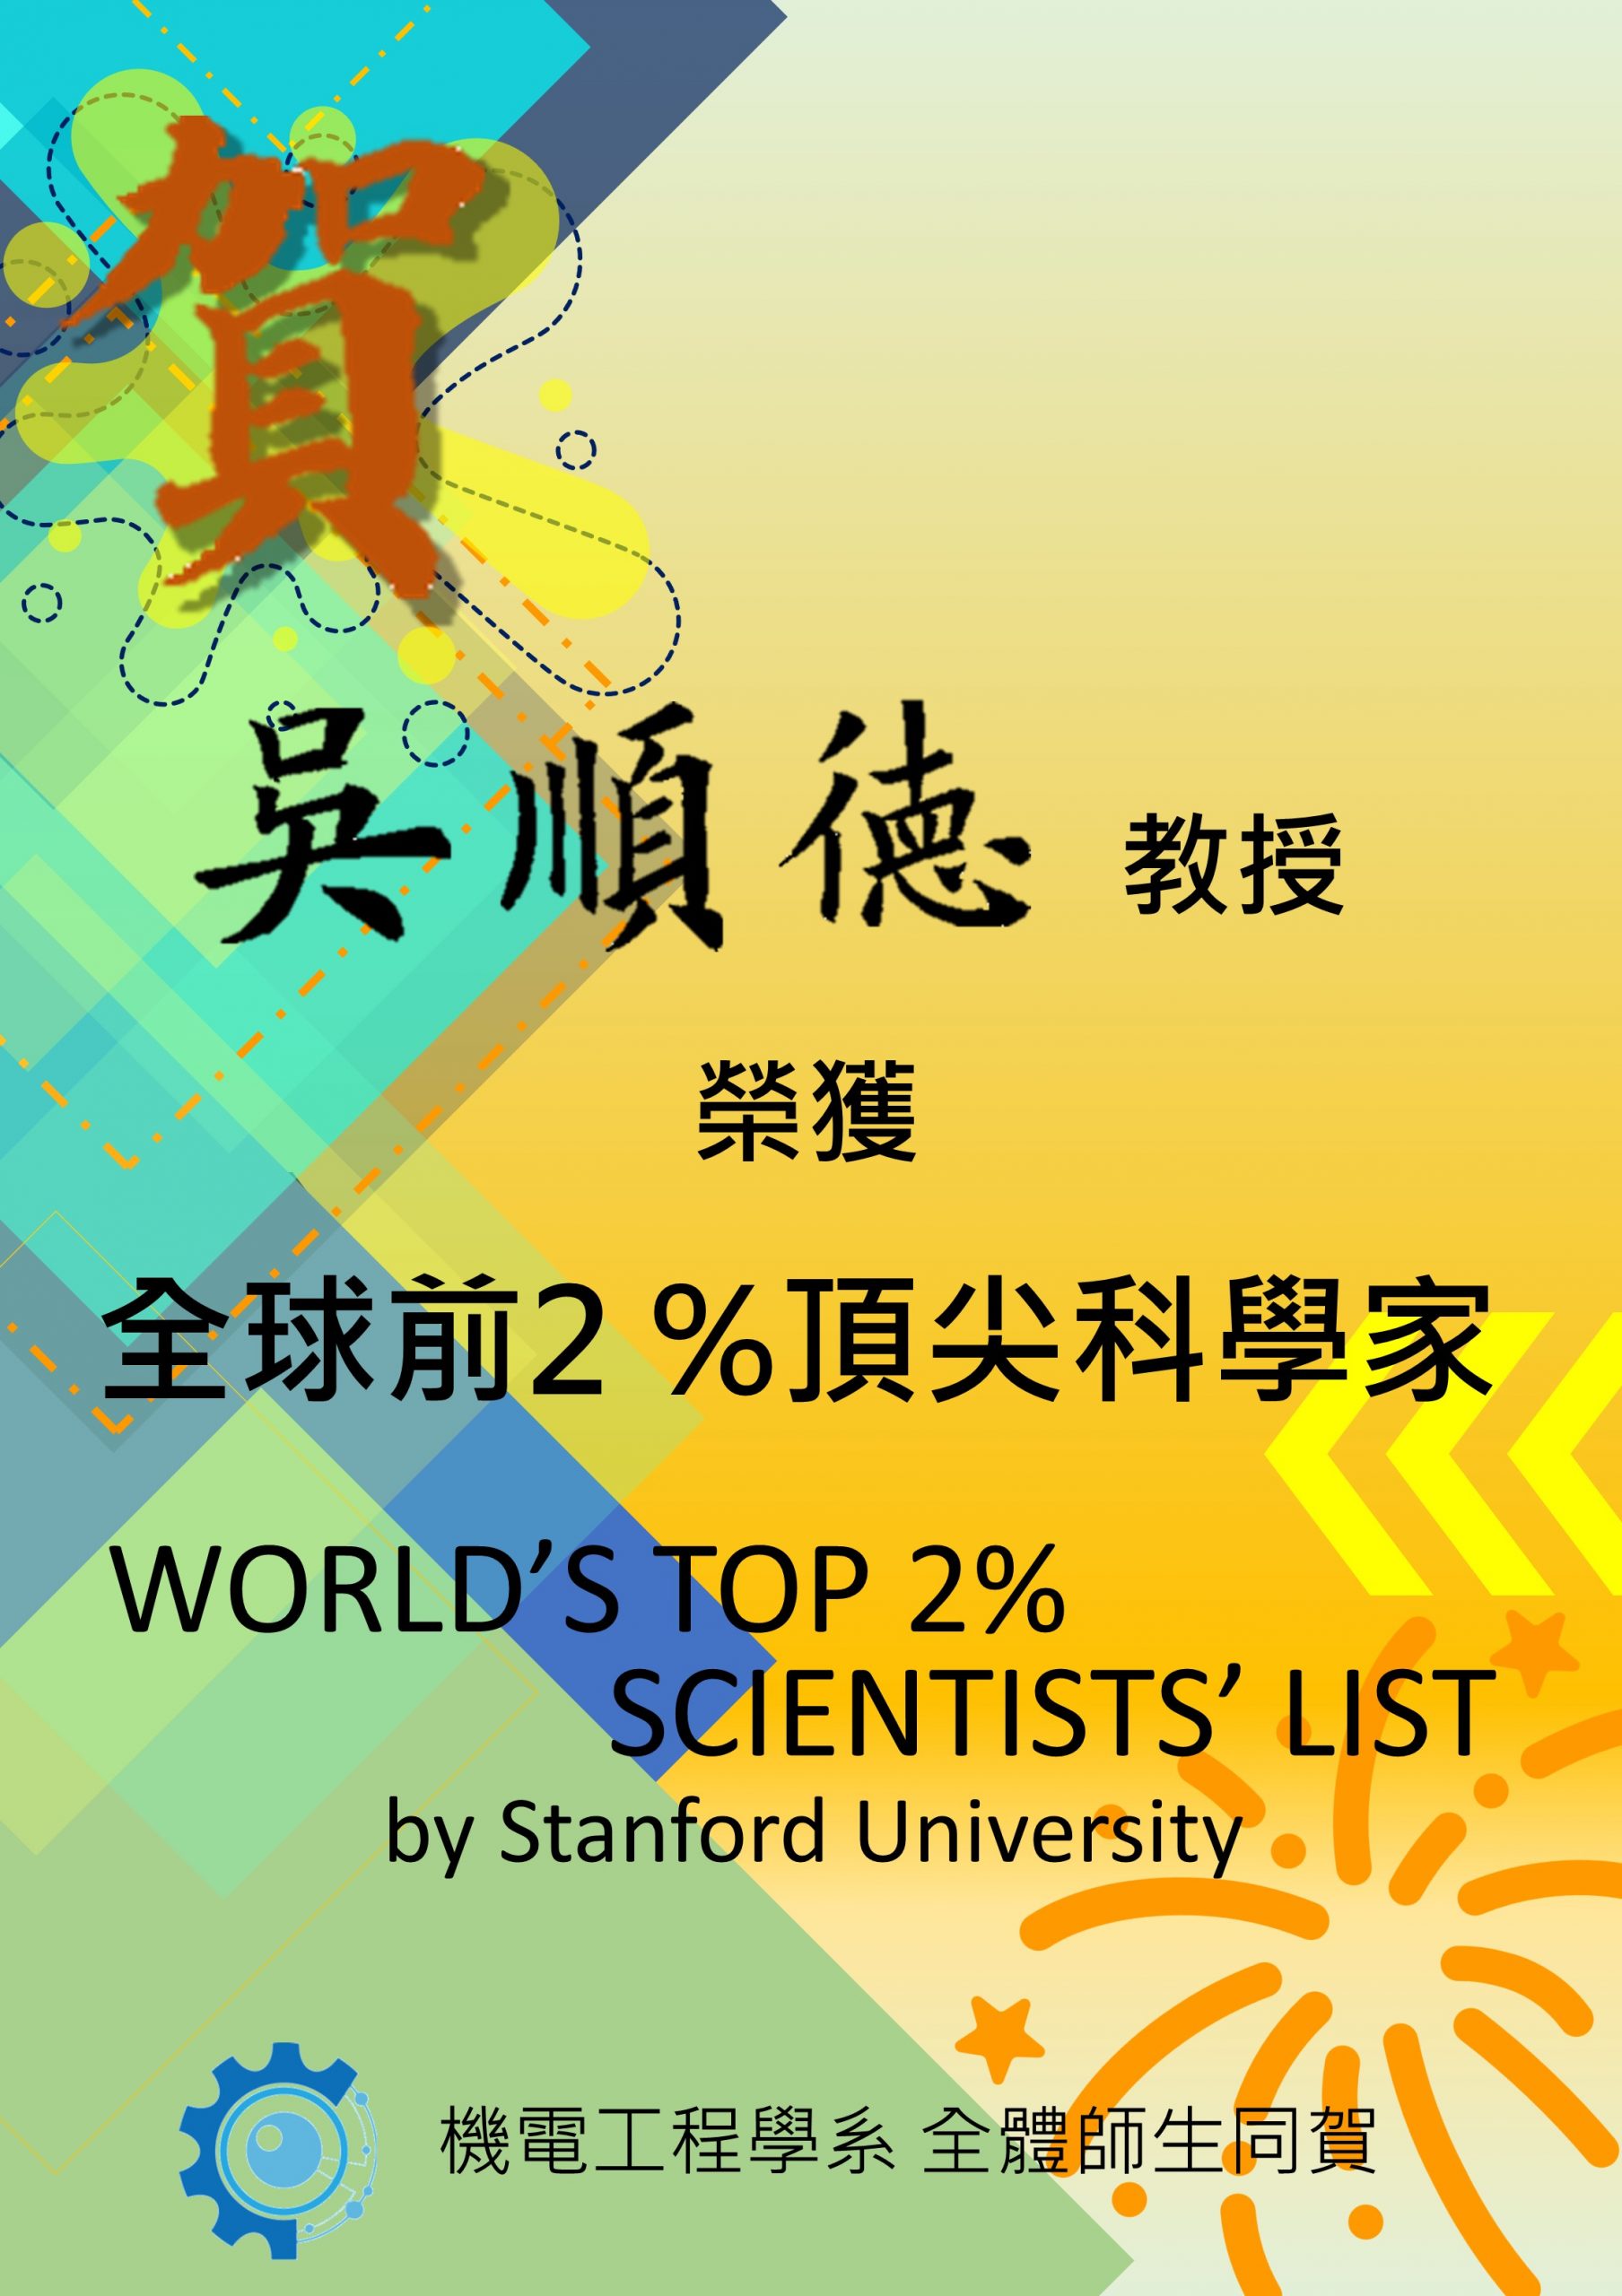 本系吳順德教授榮獲全球前2%頂尖科學家